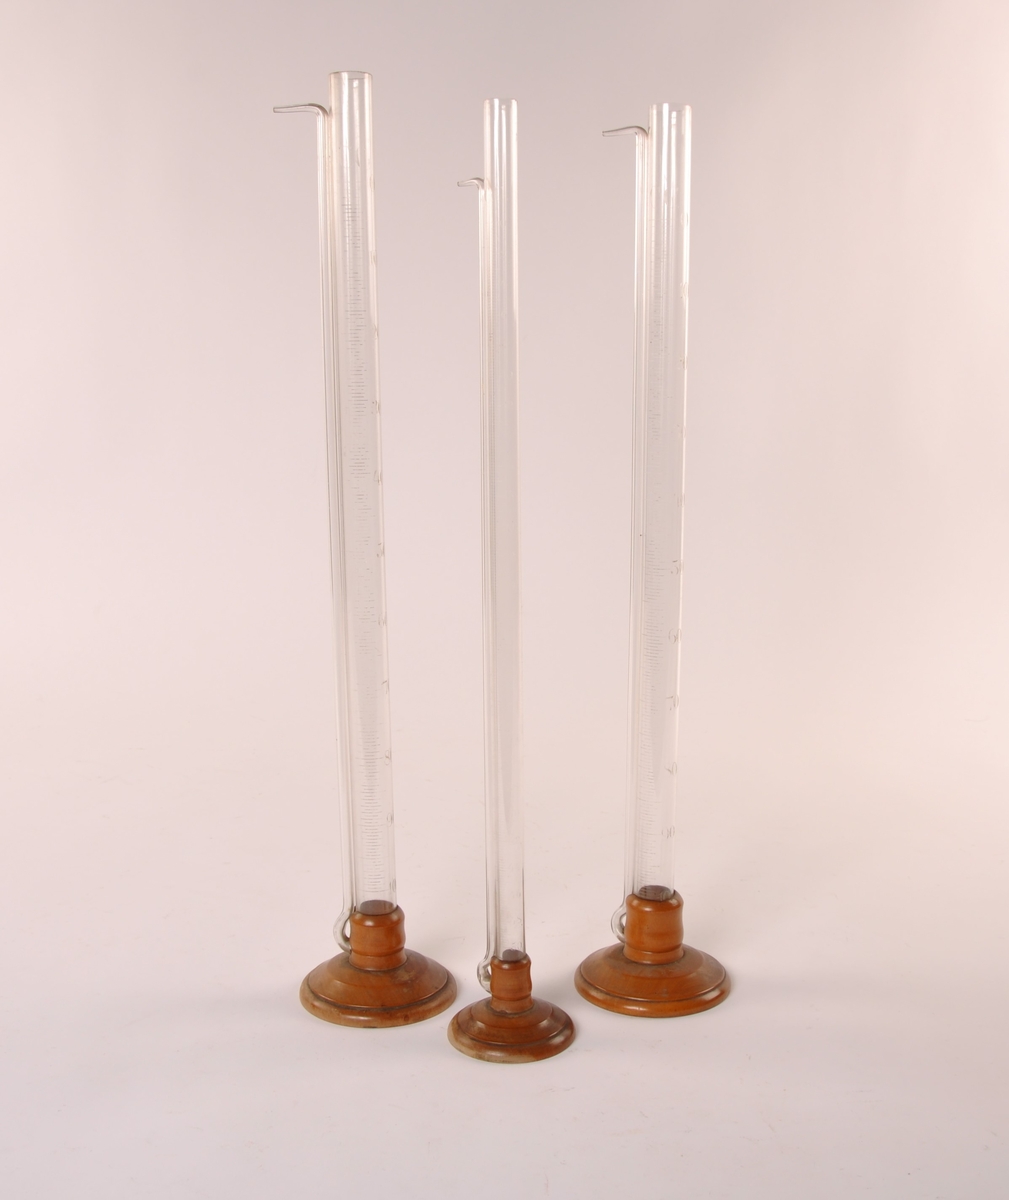 3 stk sylindriske målebegre i klart glass. Med fot i dreid tre. Tynn sylinder ved siden av hoved sylinderen.